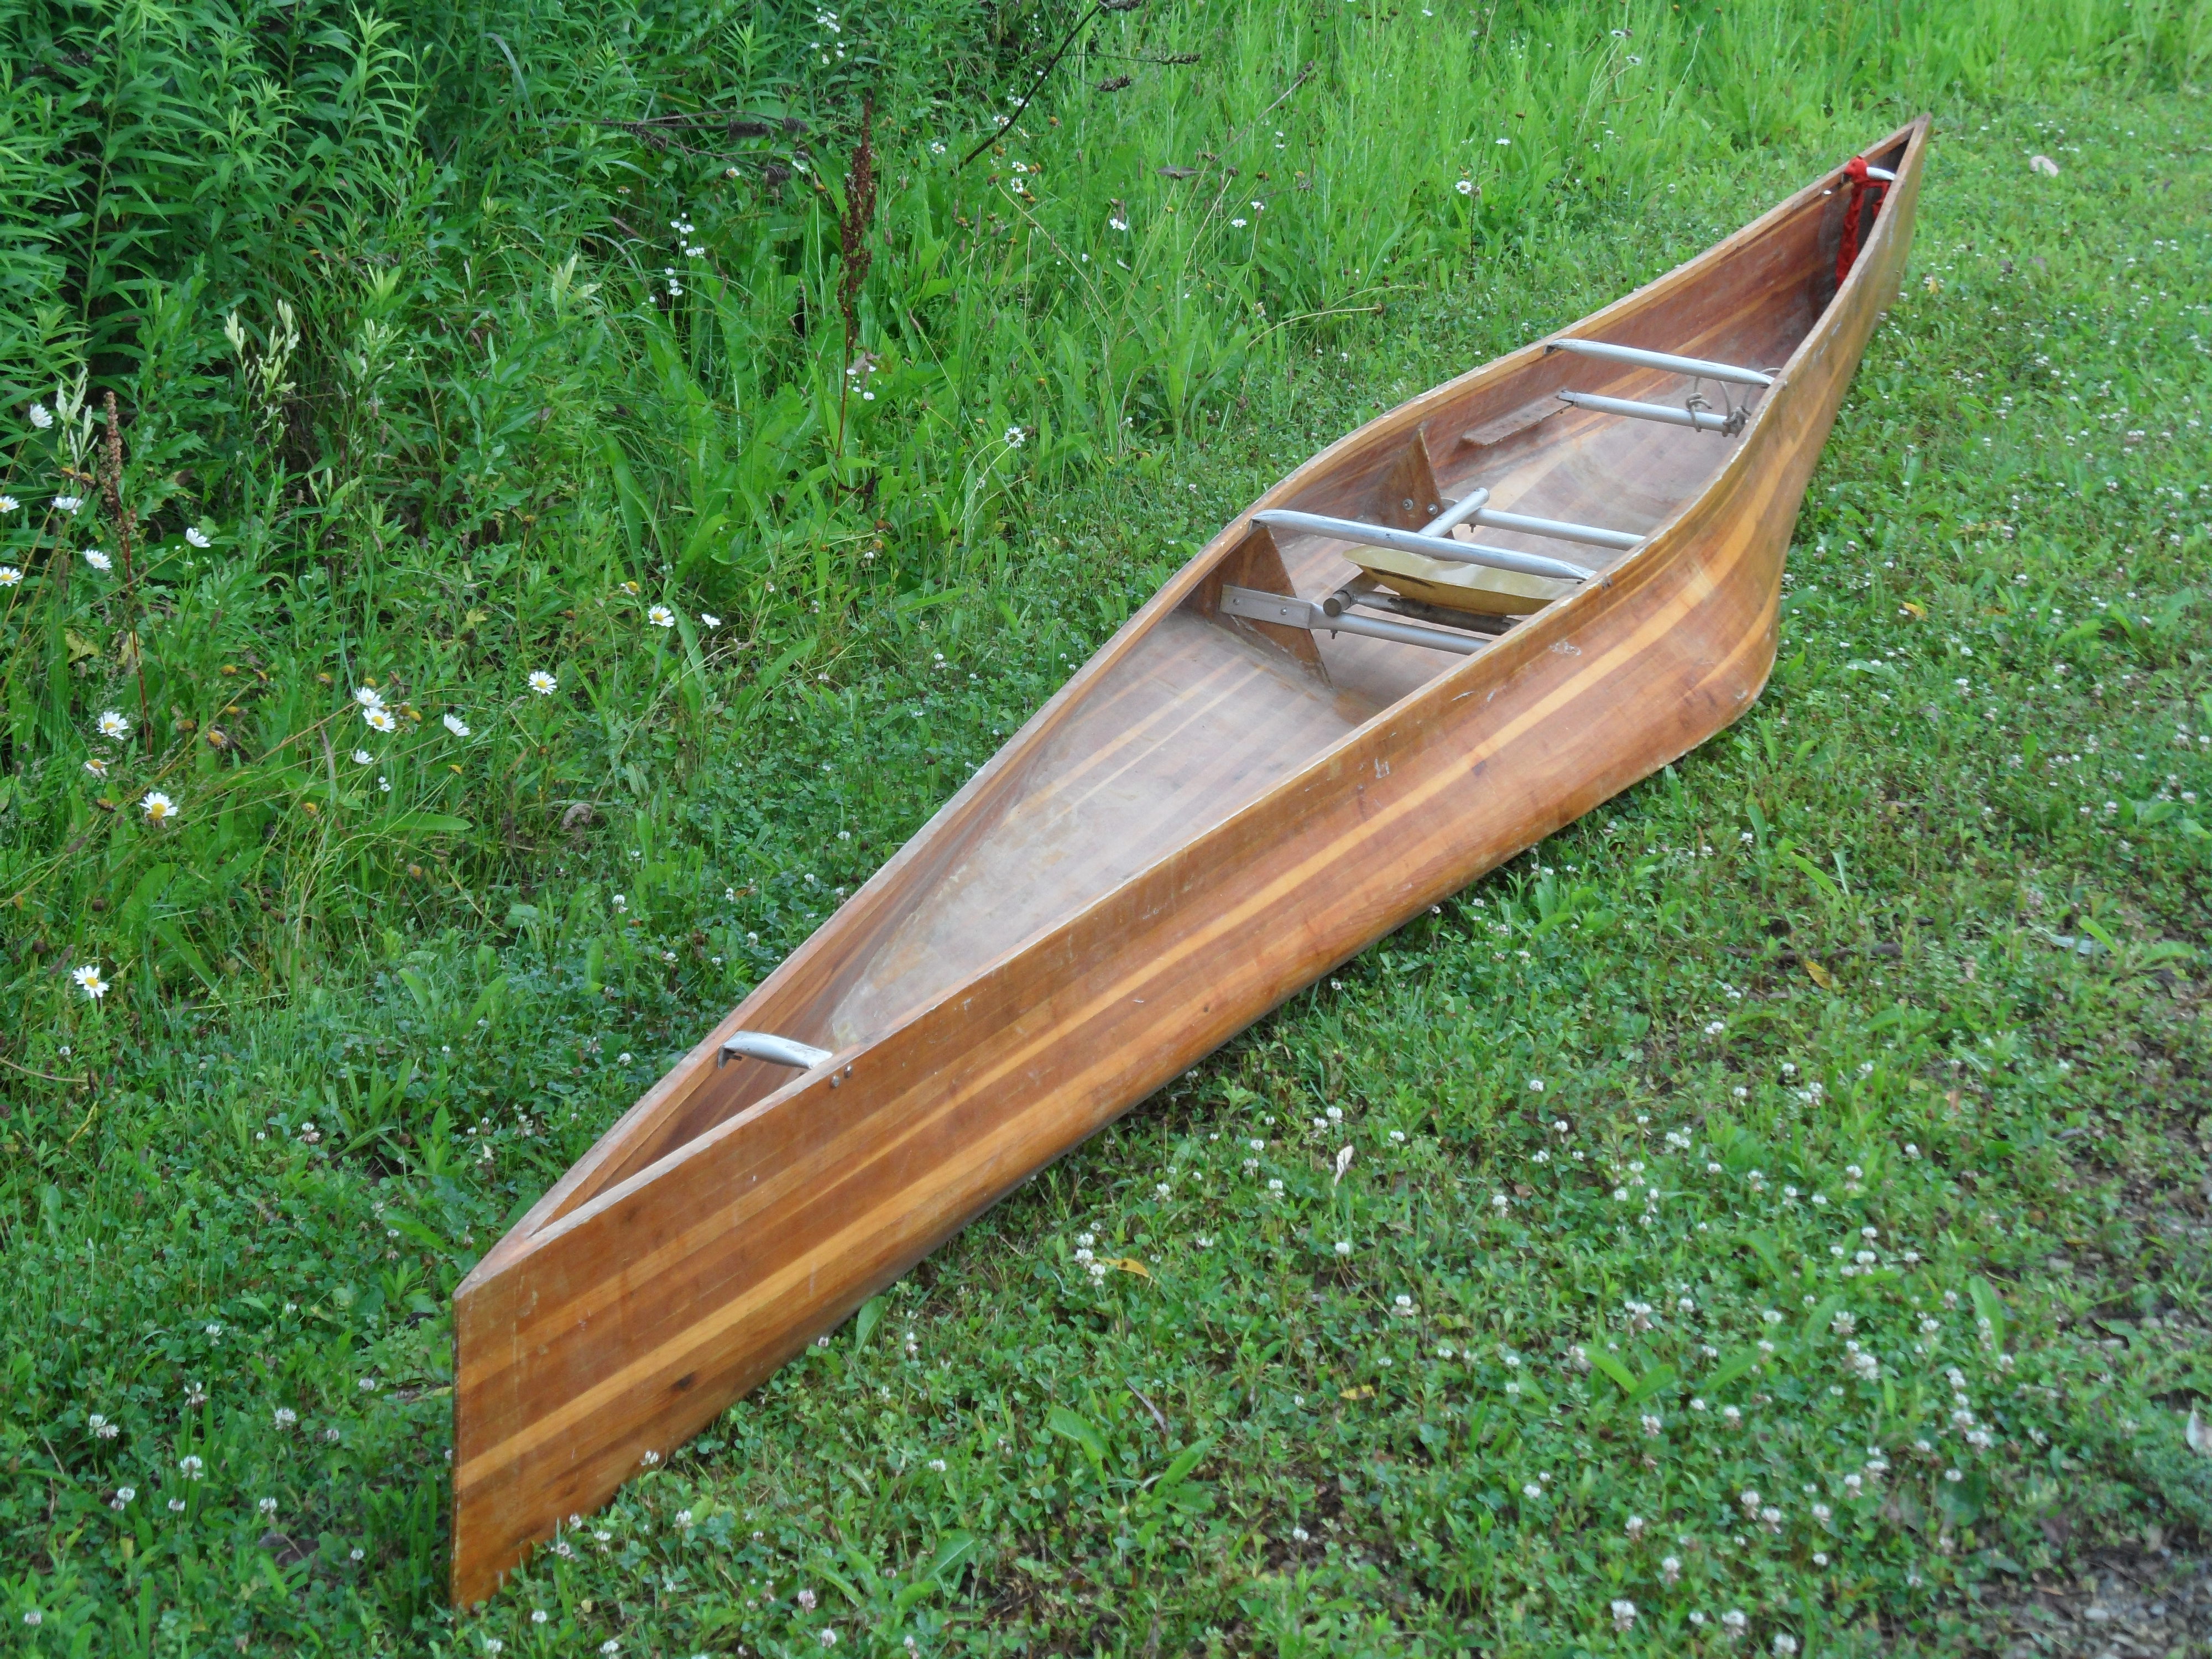 Building Wood Strip Canoe Simple